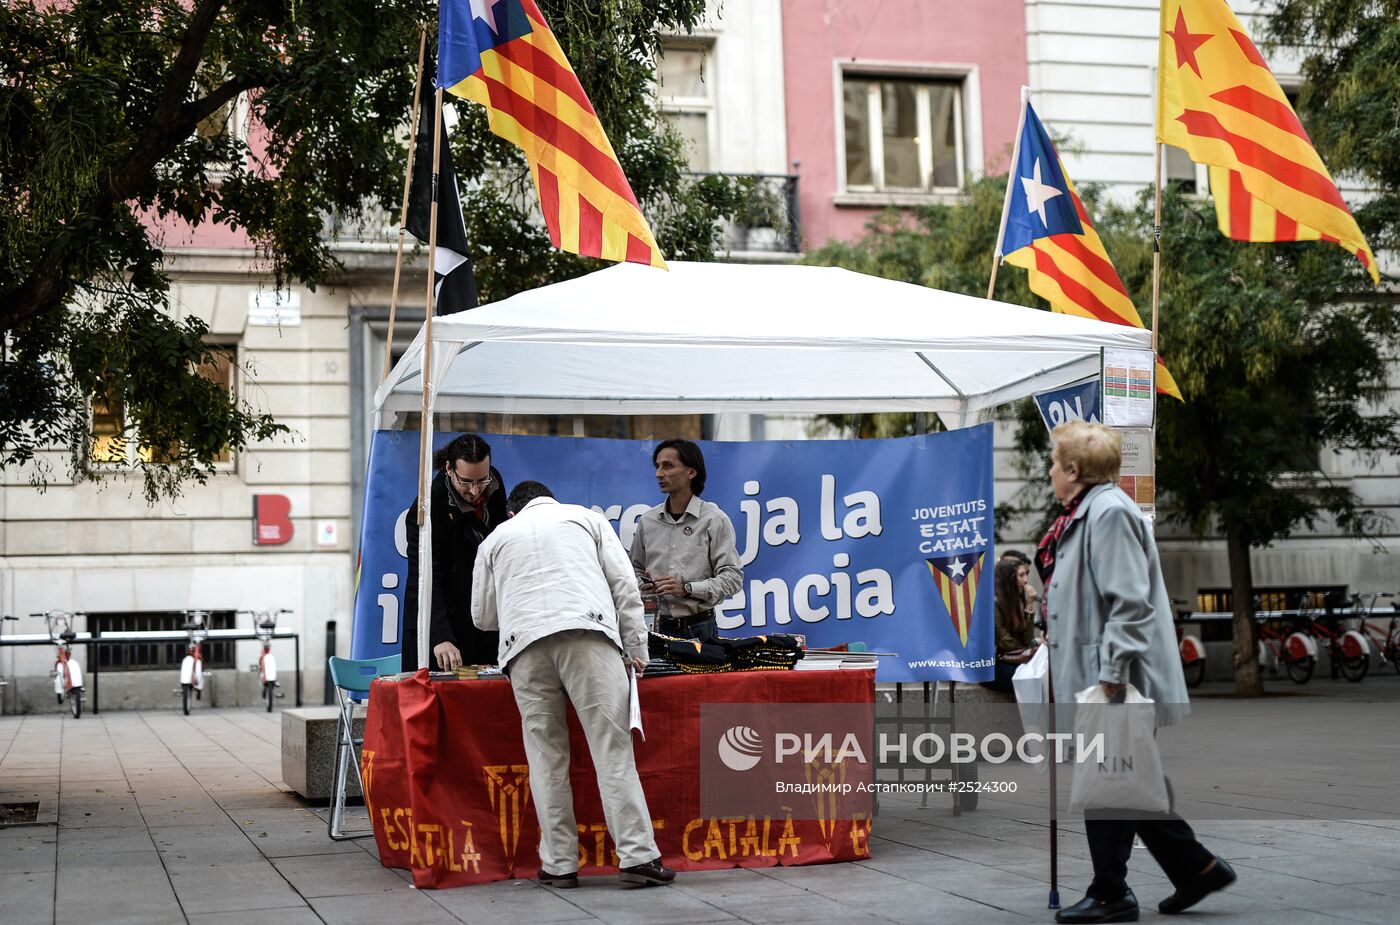 Митинг в поддержку независимости Каталонии в Барселоне